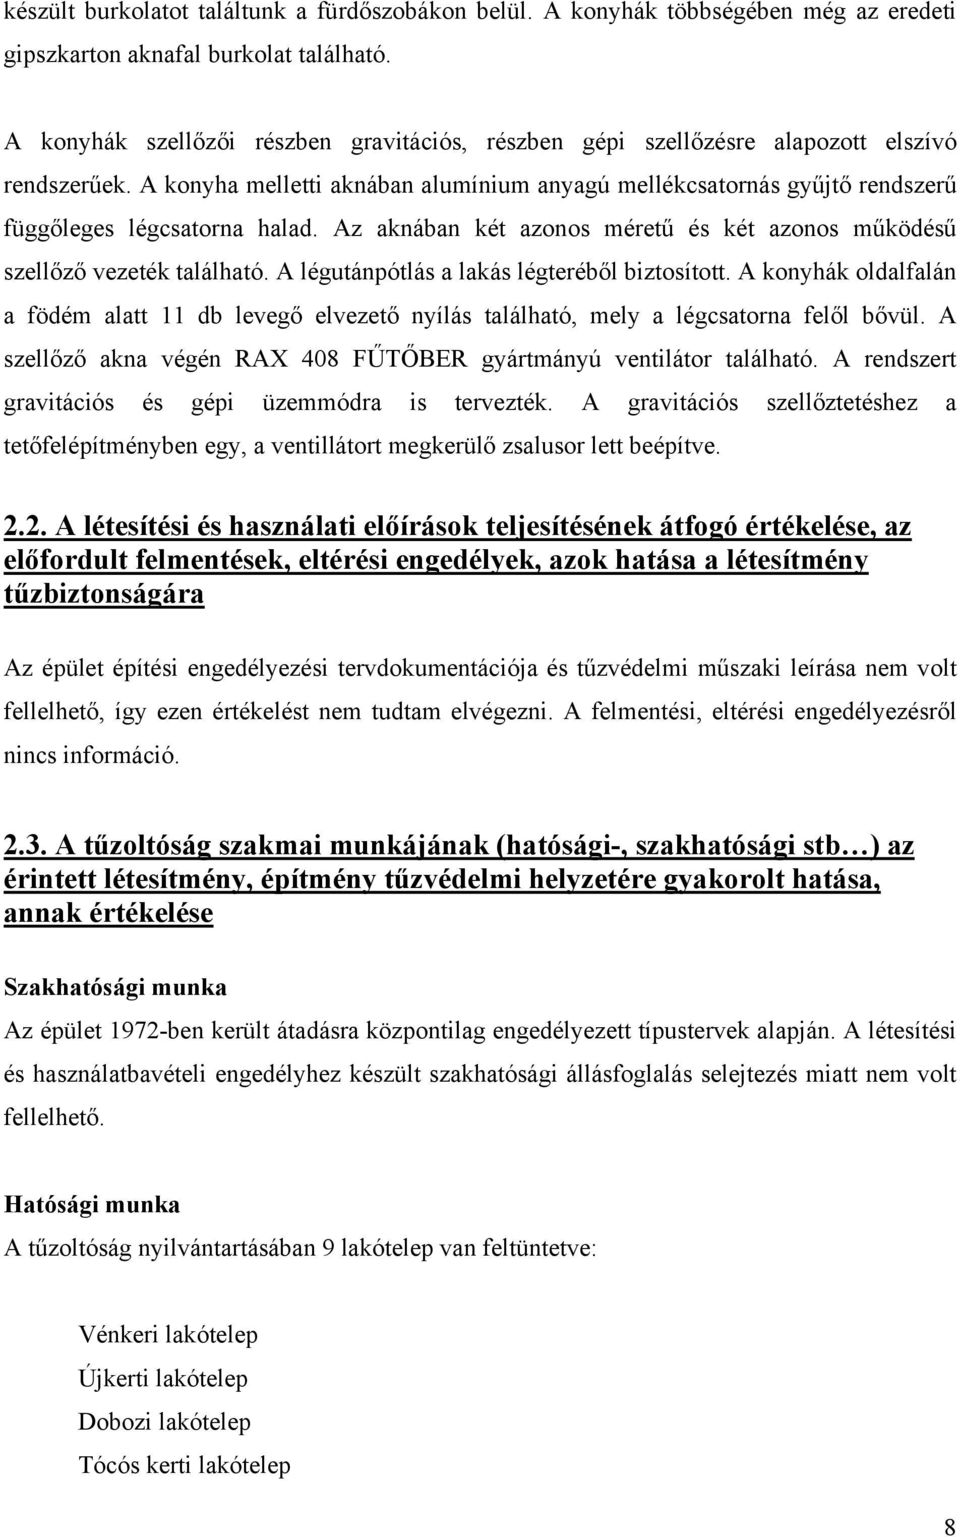 Debrecen: középmagas lakóház tanulmány tűzmegelőzési tapasztalatai - PDF  Ingyenes letöltés